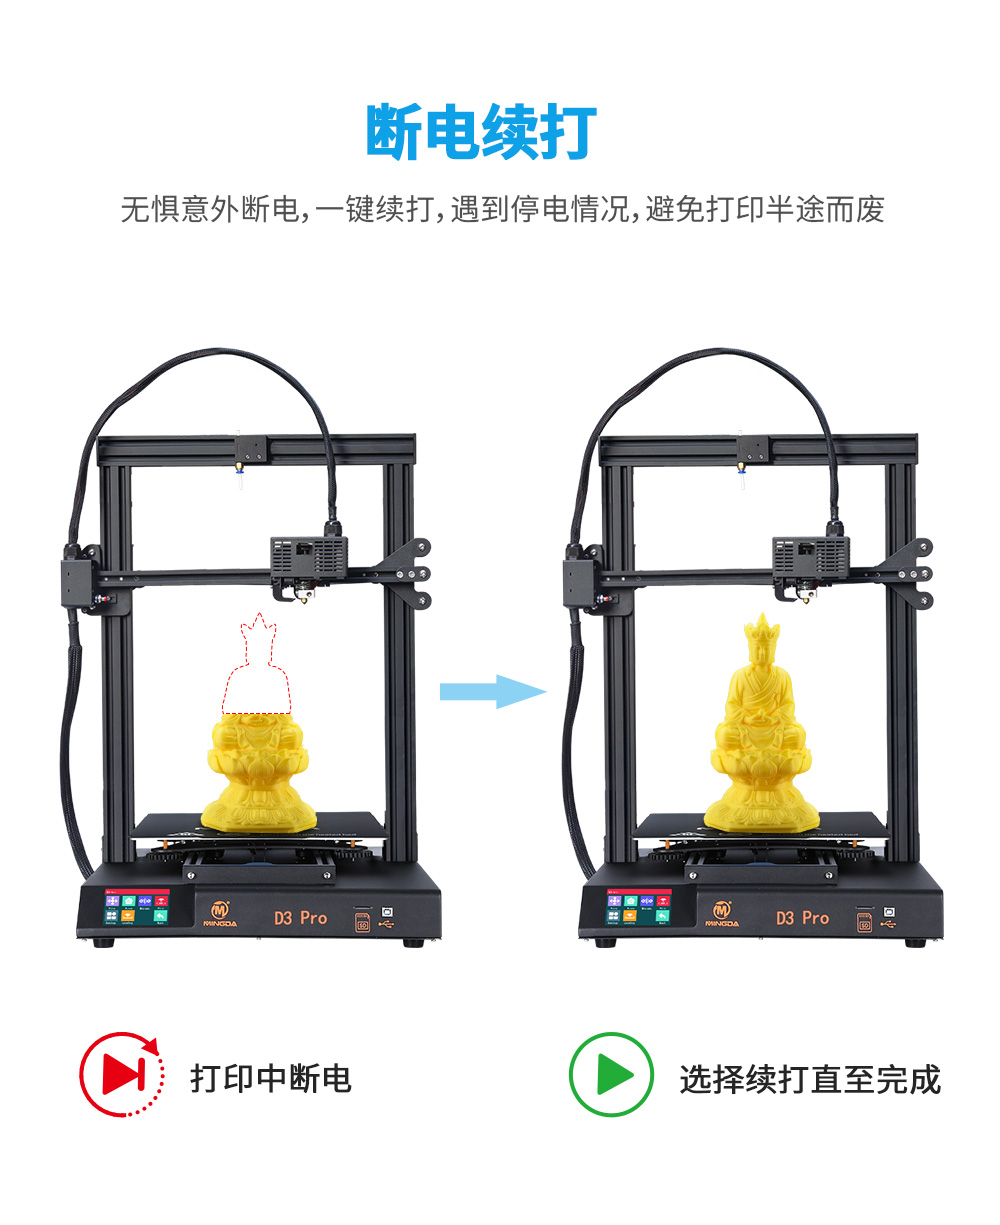 新品| 全新升级 D3 一体式专业级3D打印机 (图10)